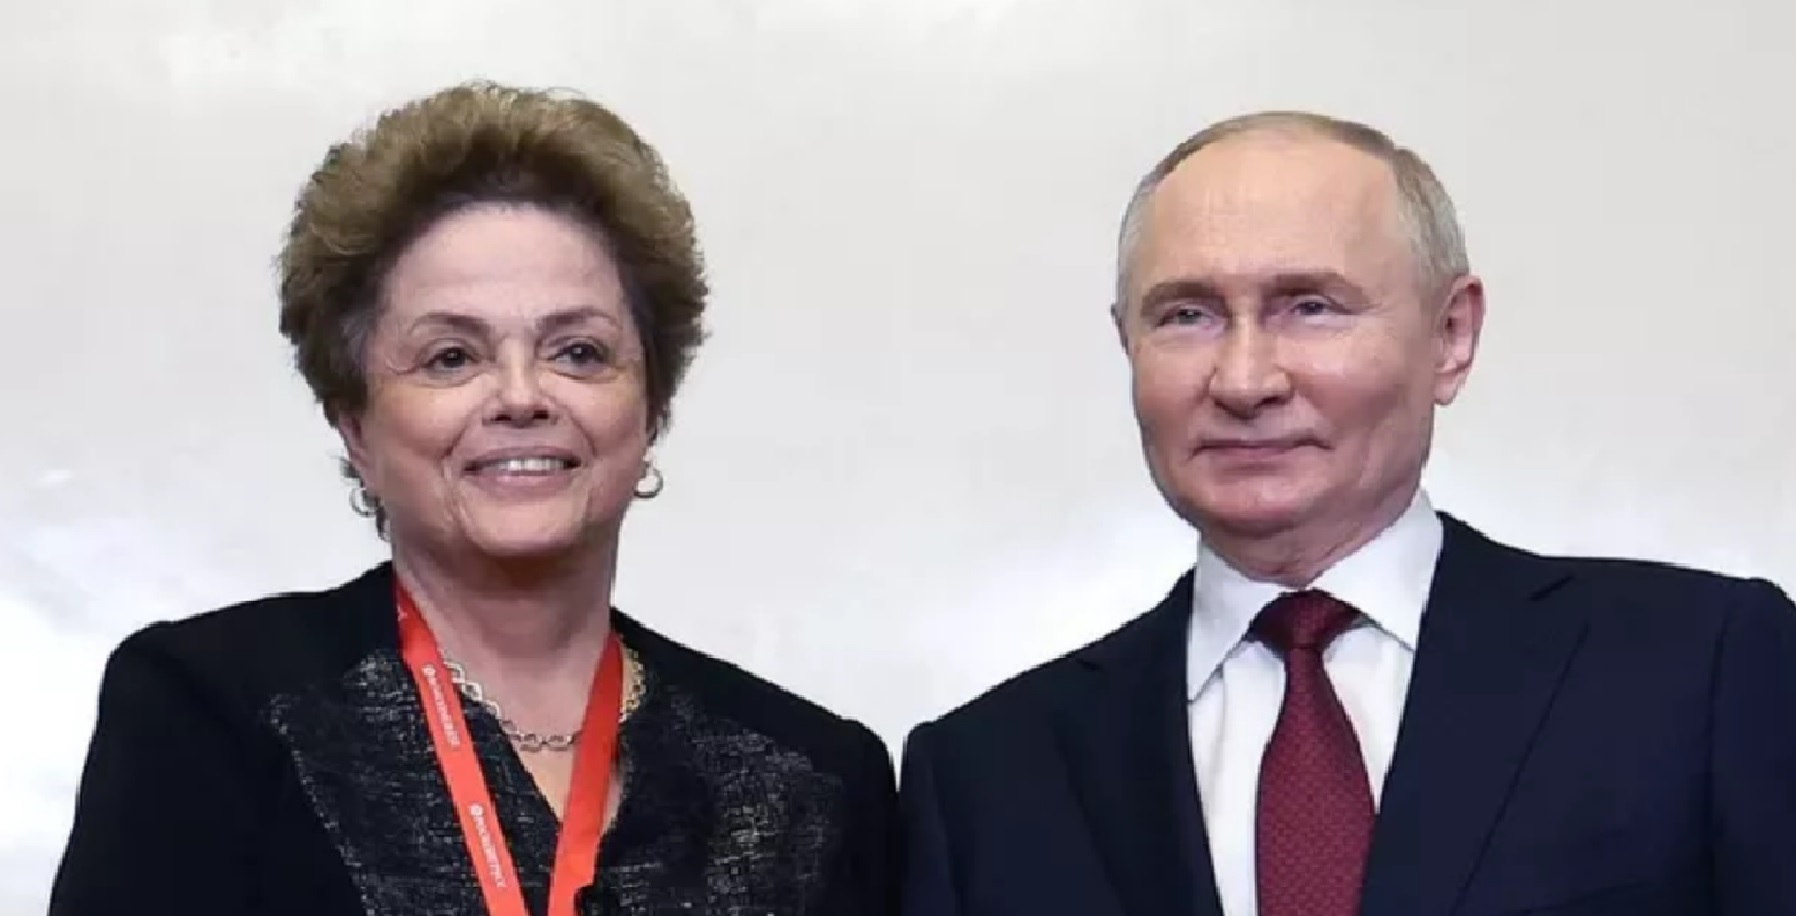 Putin Dilma